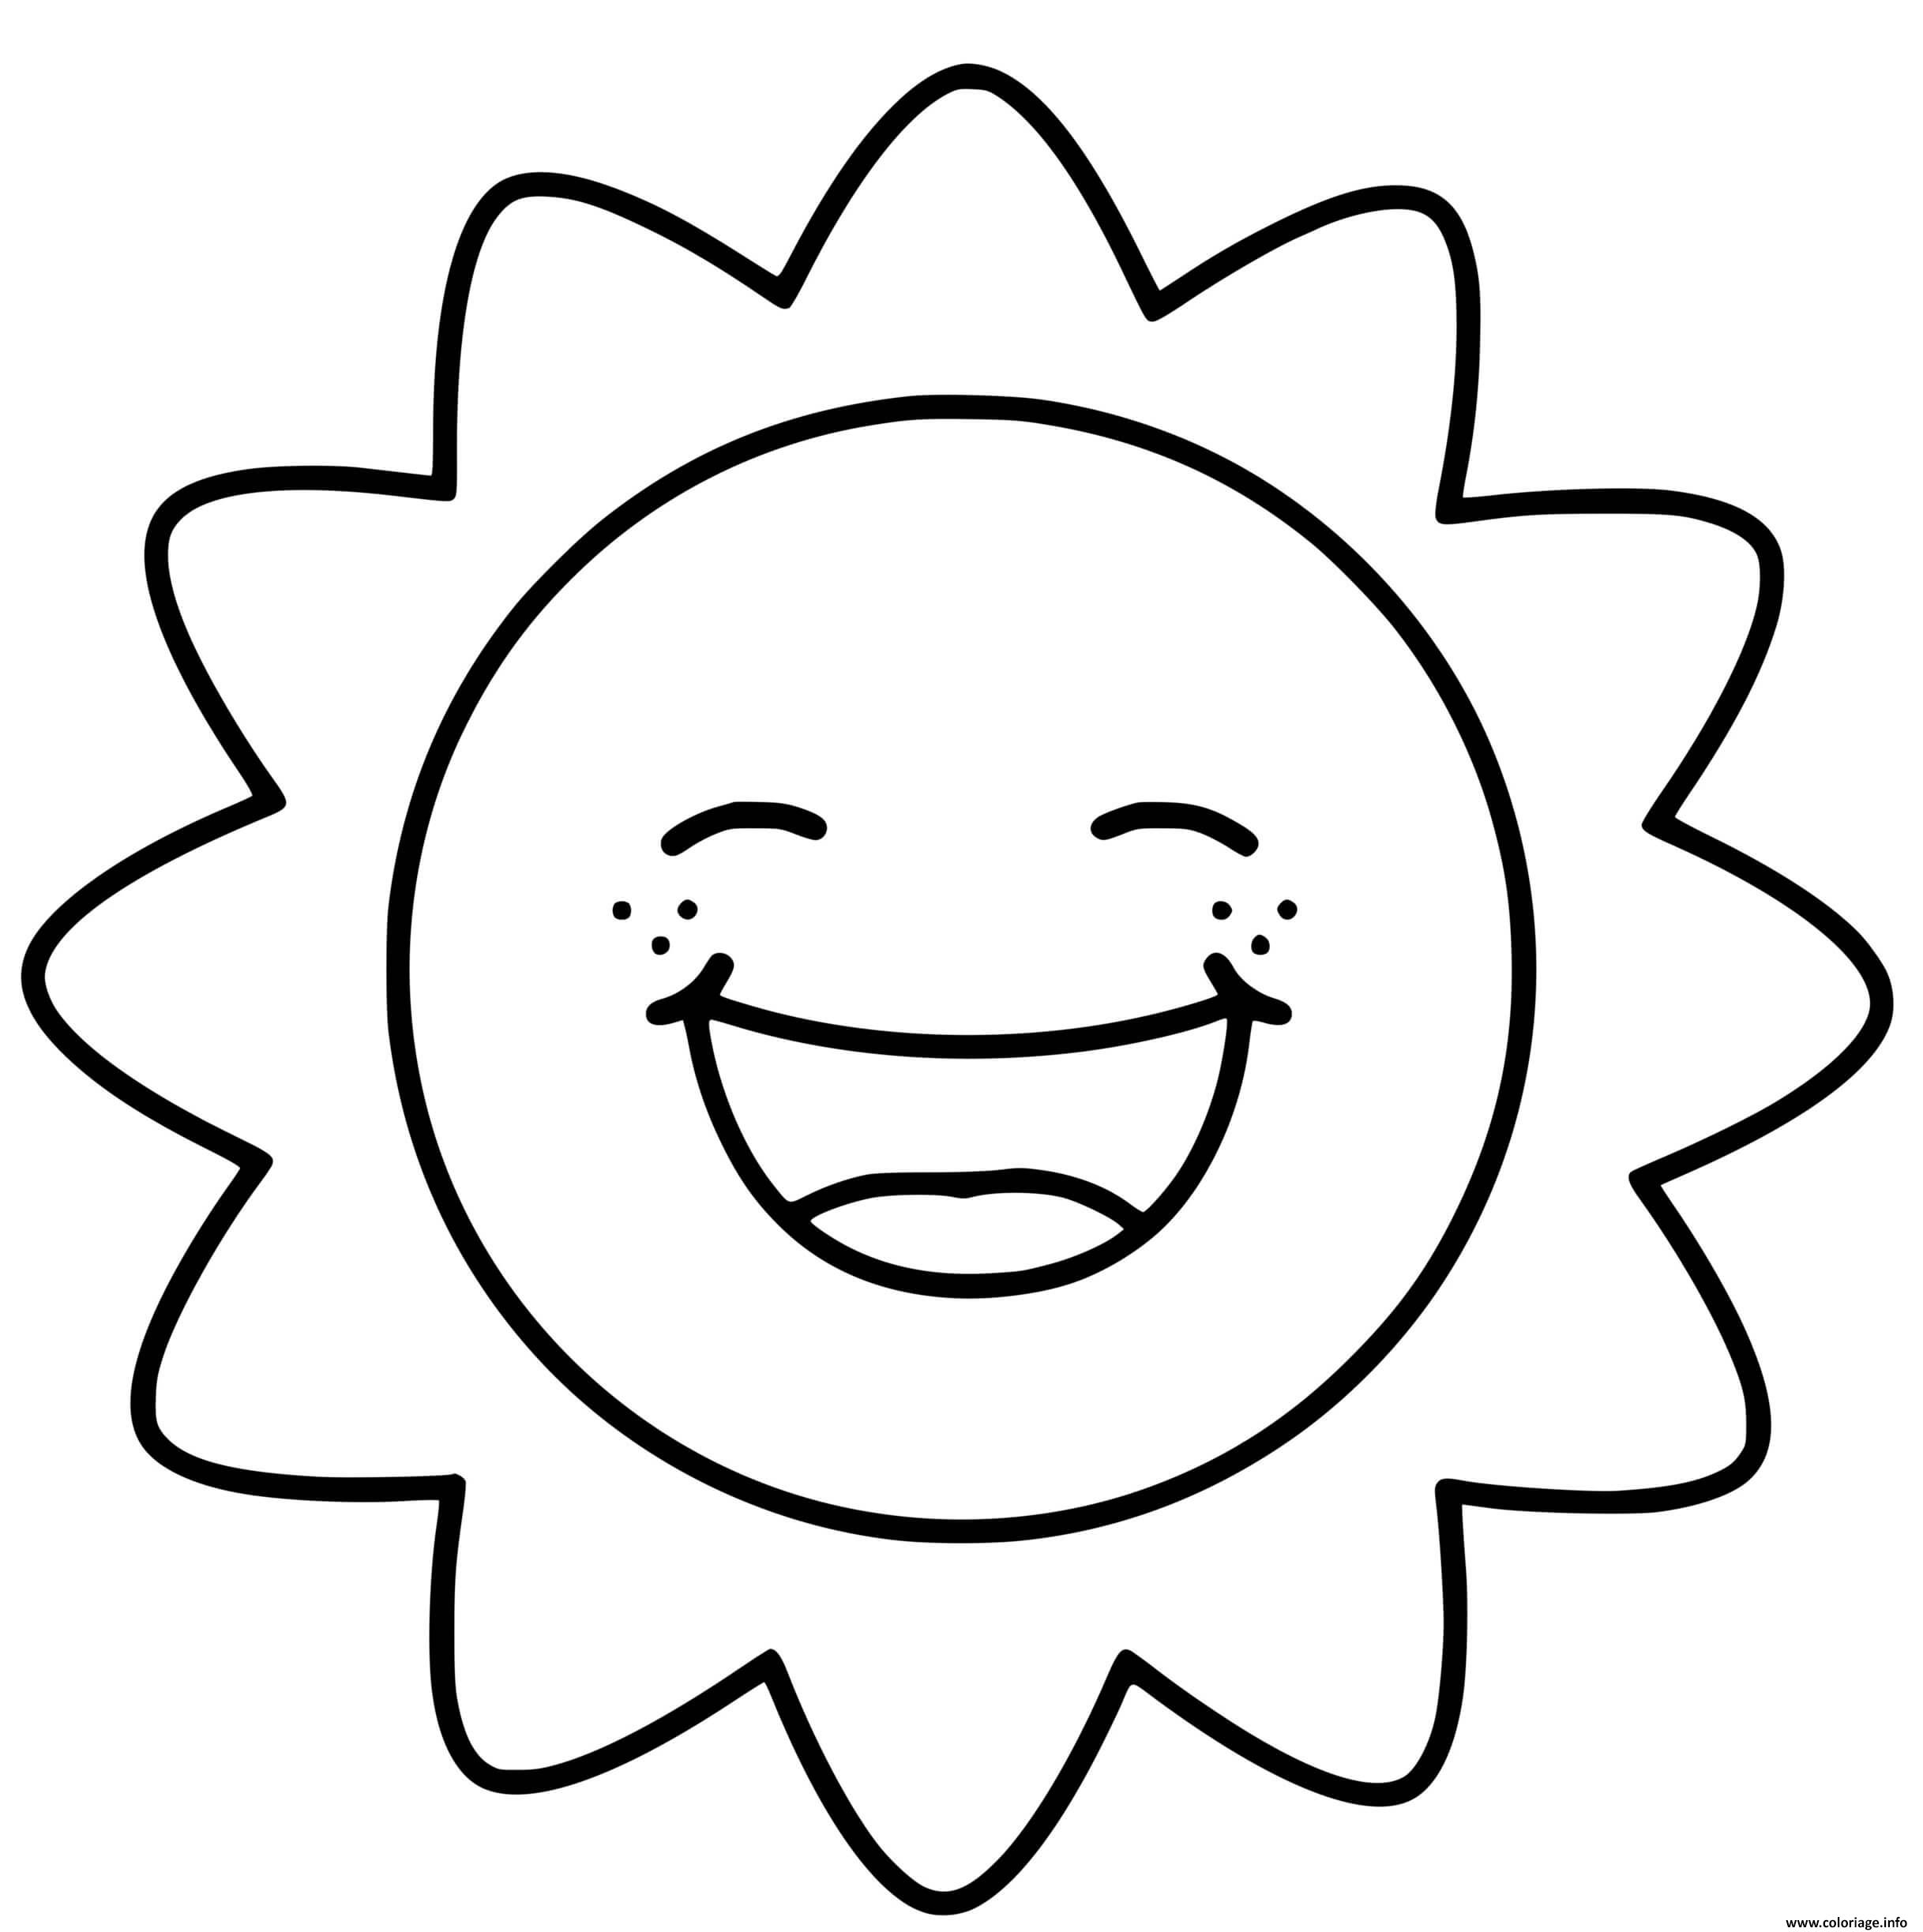 Dessin soleil kawaii sourire sun Coloriage Gratuit à Imprimer